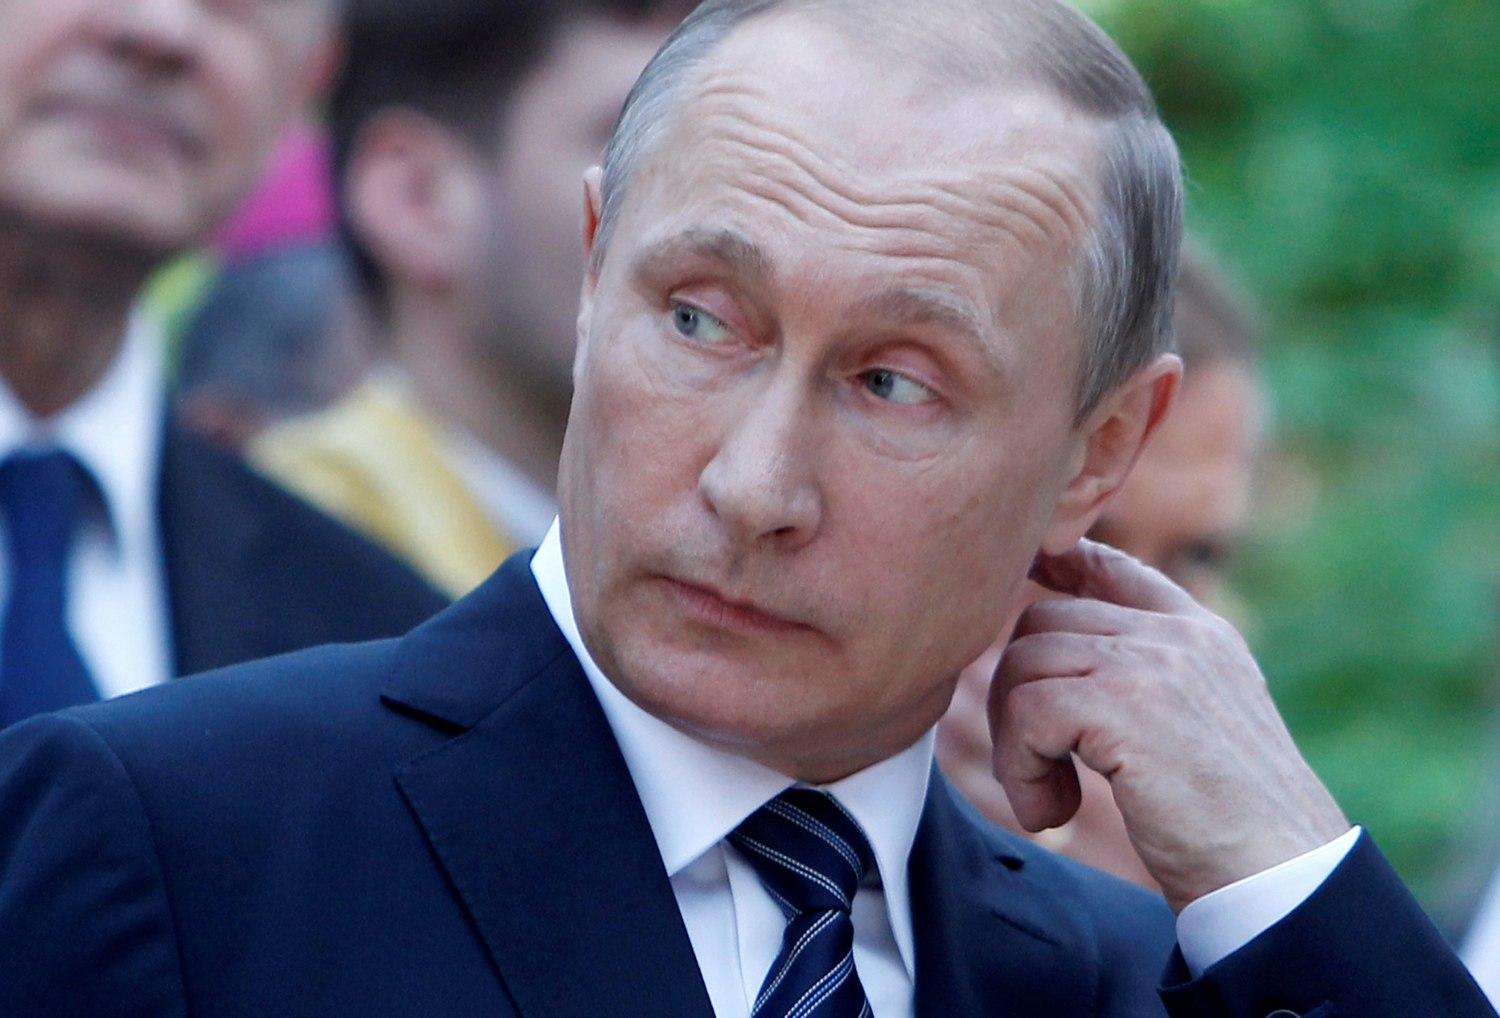 Putyin vakarhatja a fejét, ha mégsem a favoritja győz